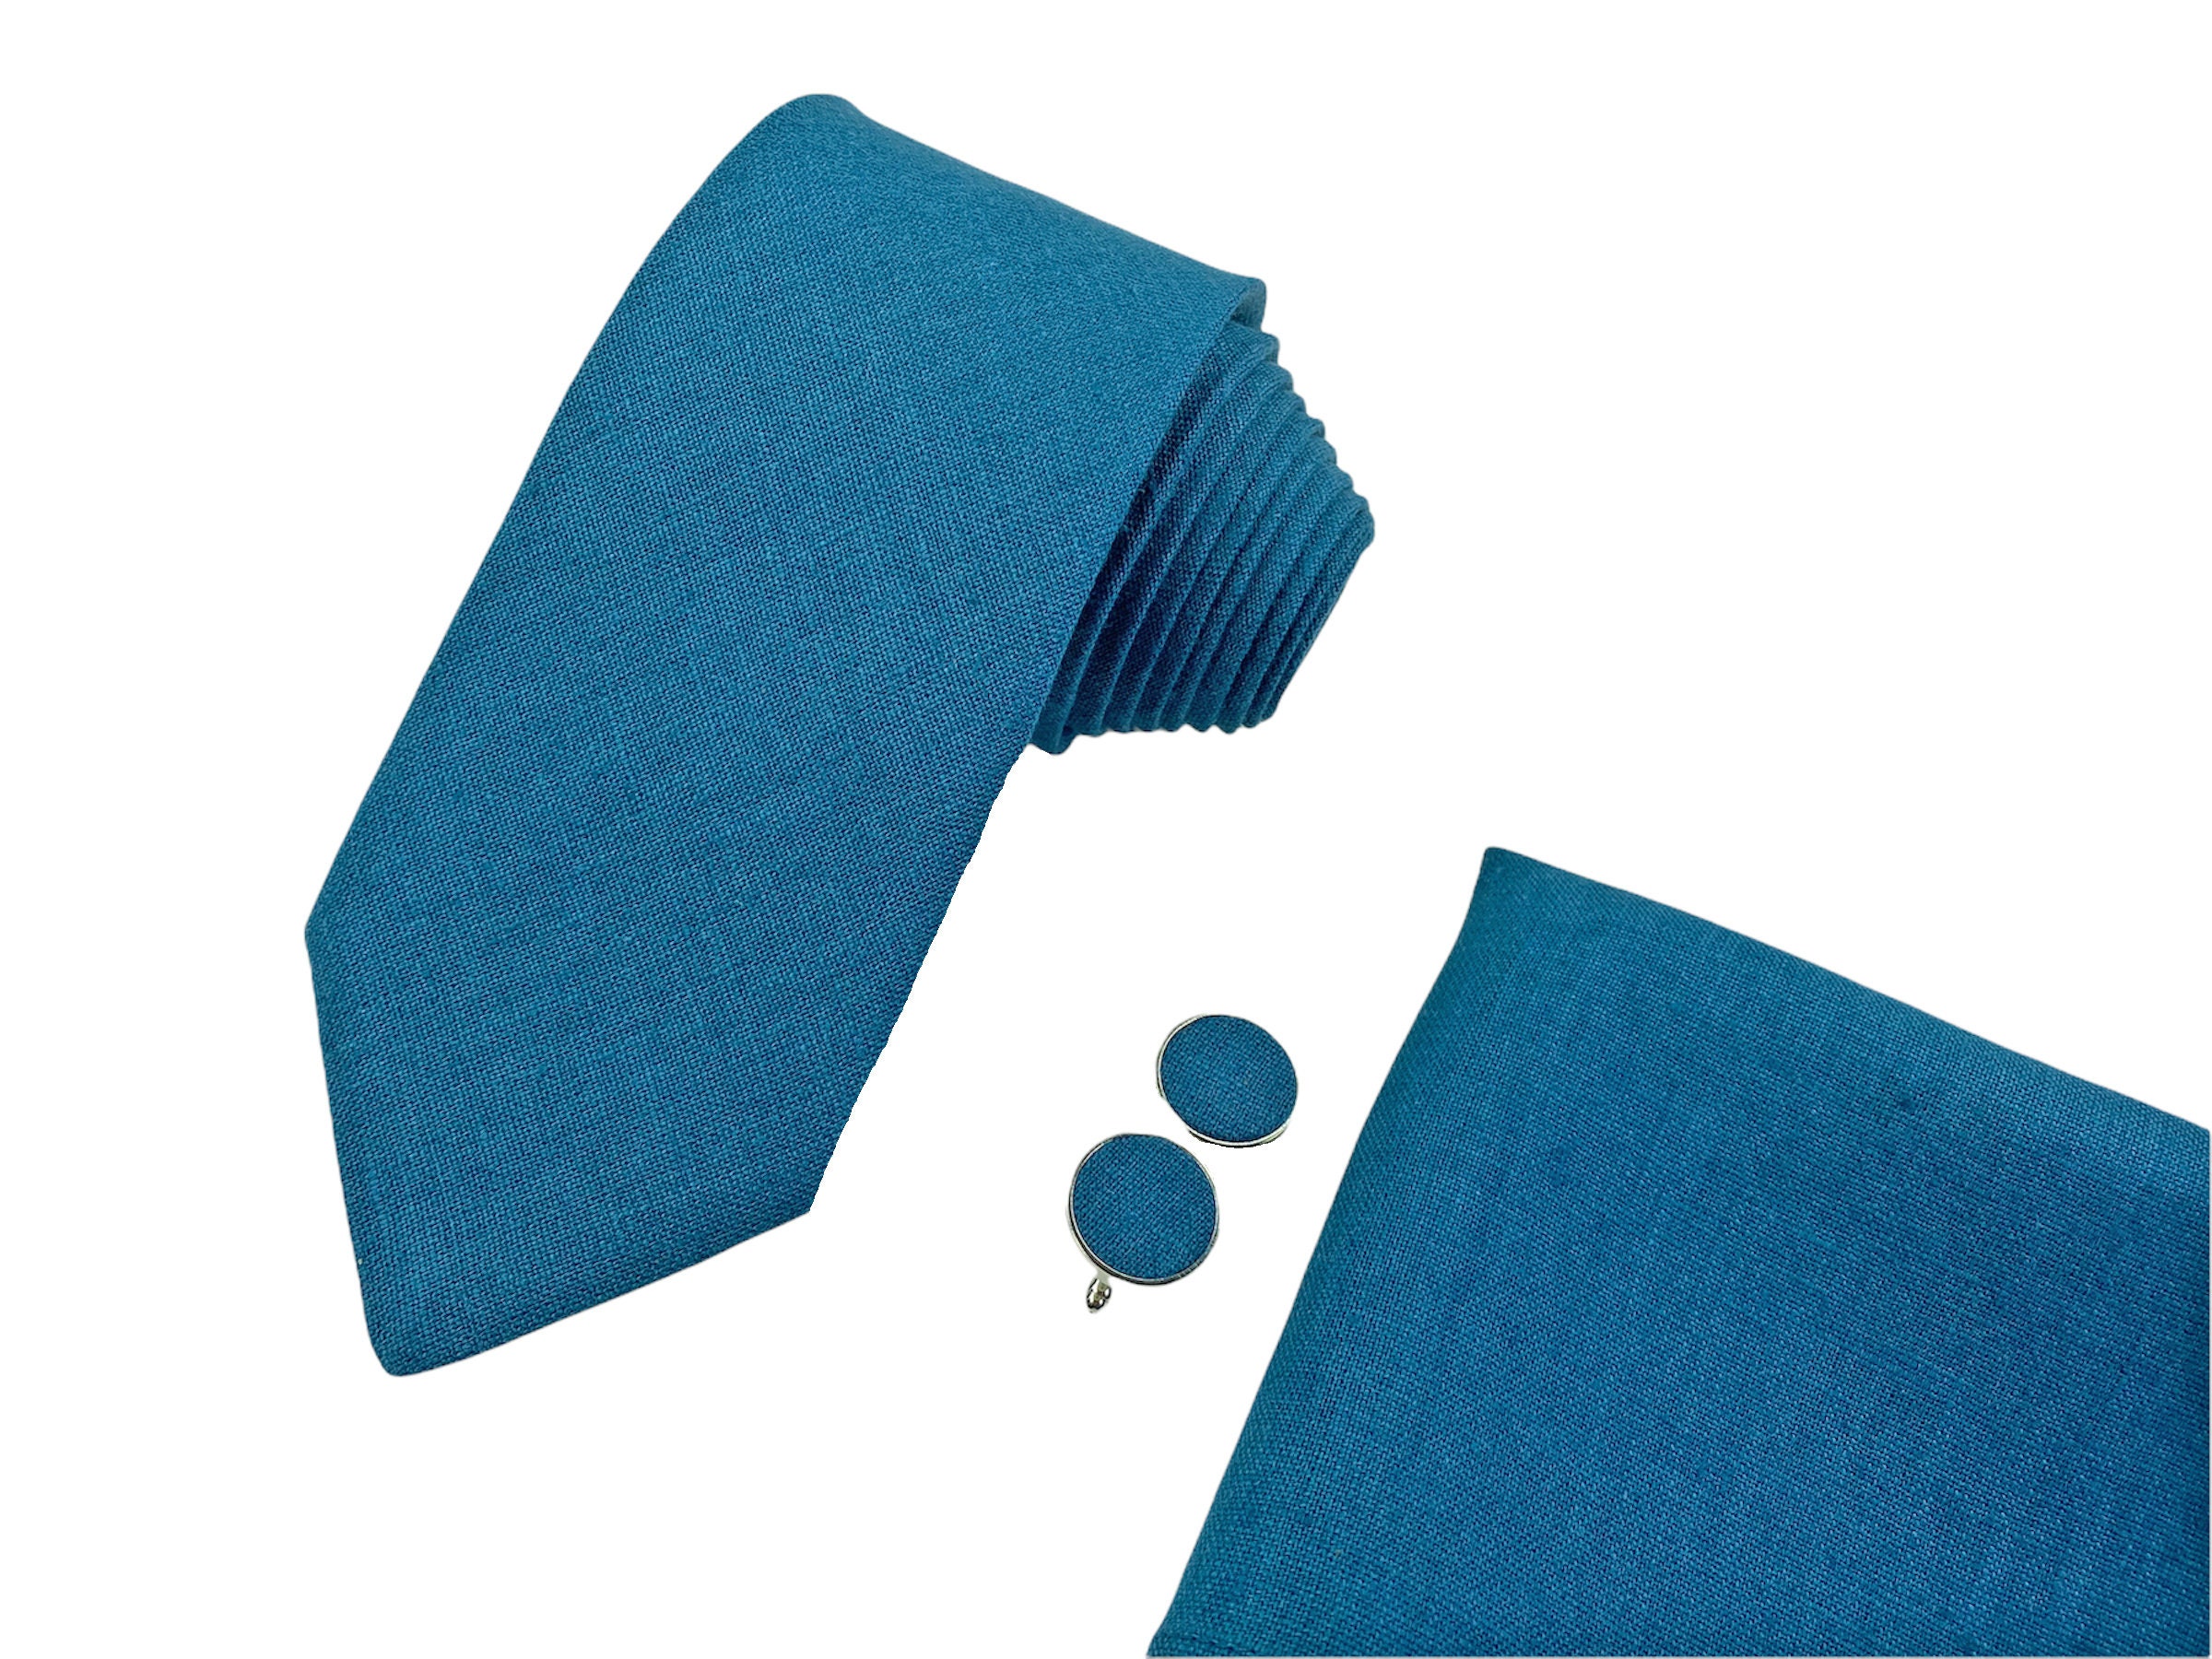 Teal Blue Skinny Tie / Teal Blue Skinny Necktie / Teal Blue Wedding